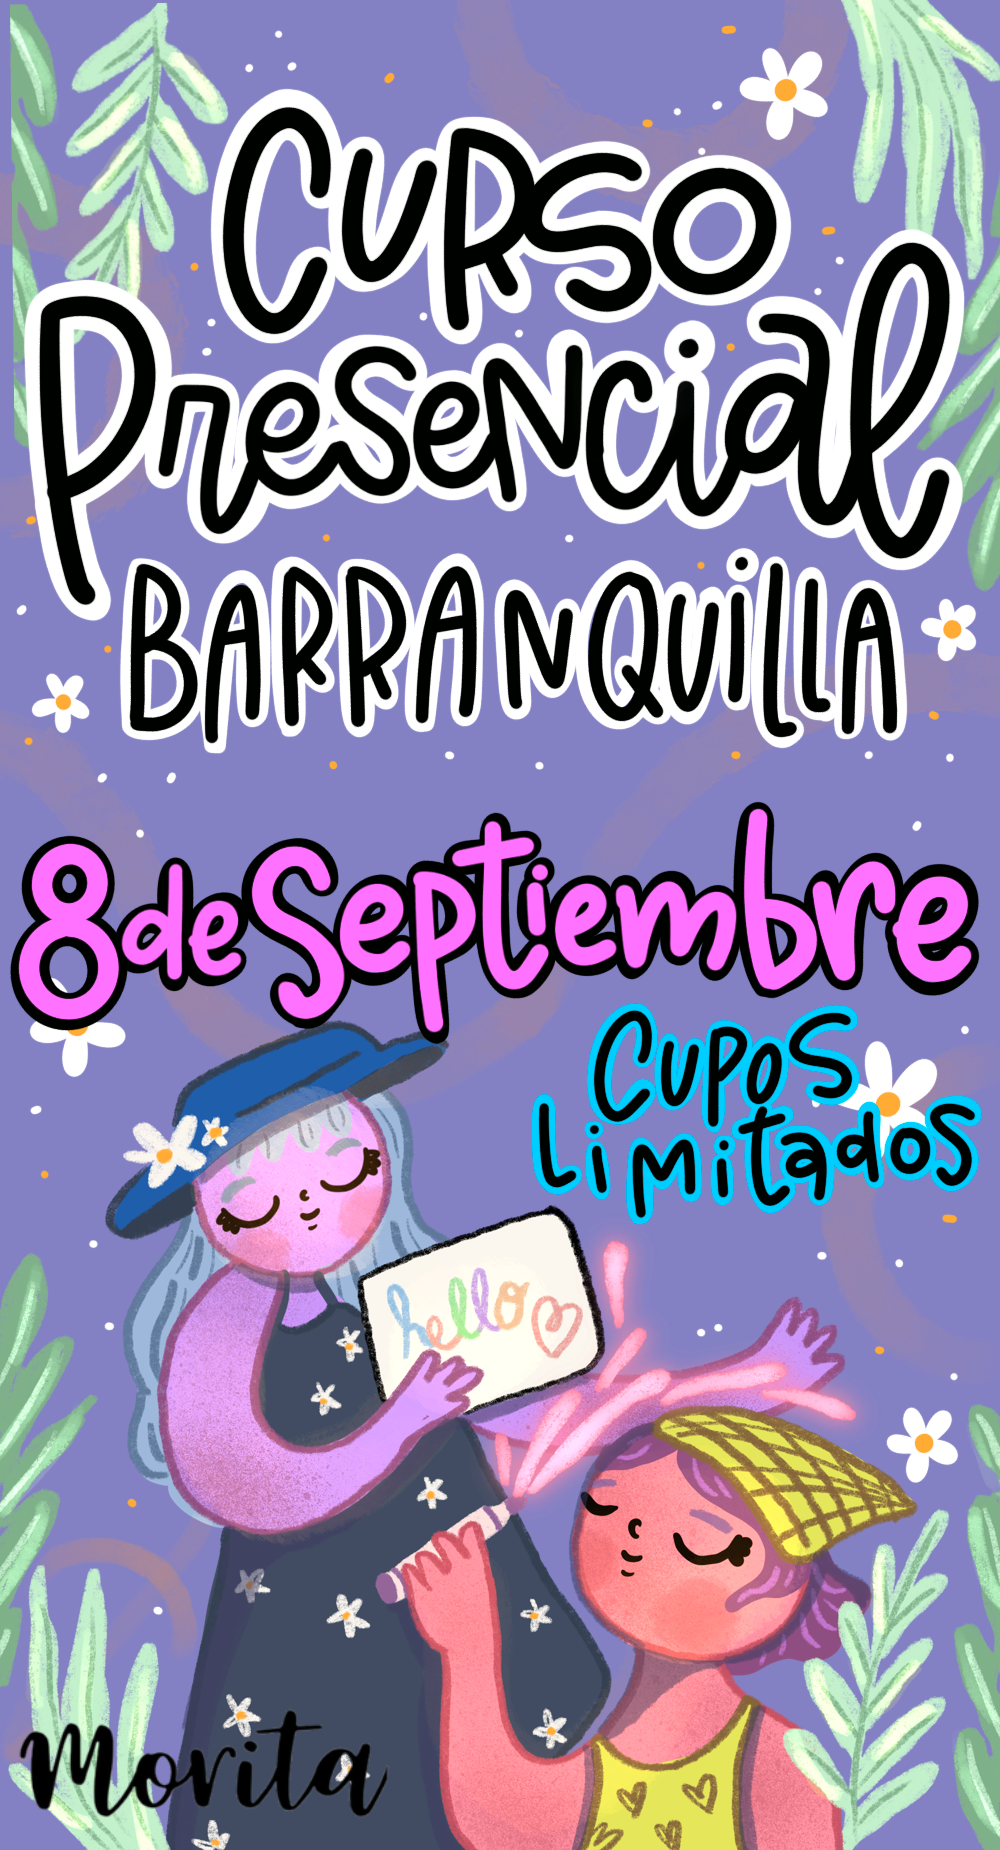 Curso Presencial Barranquilla